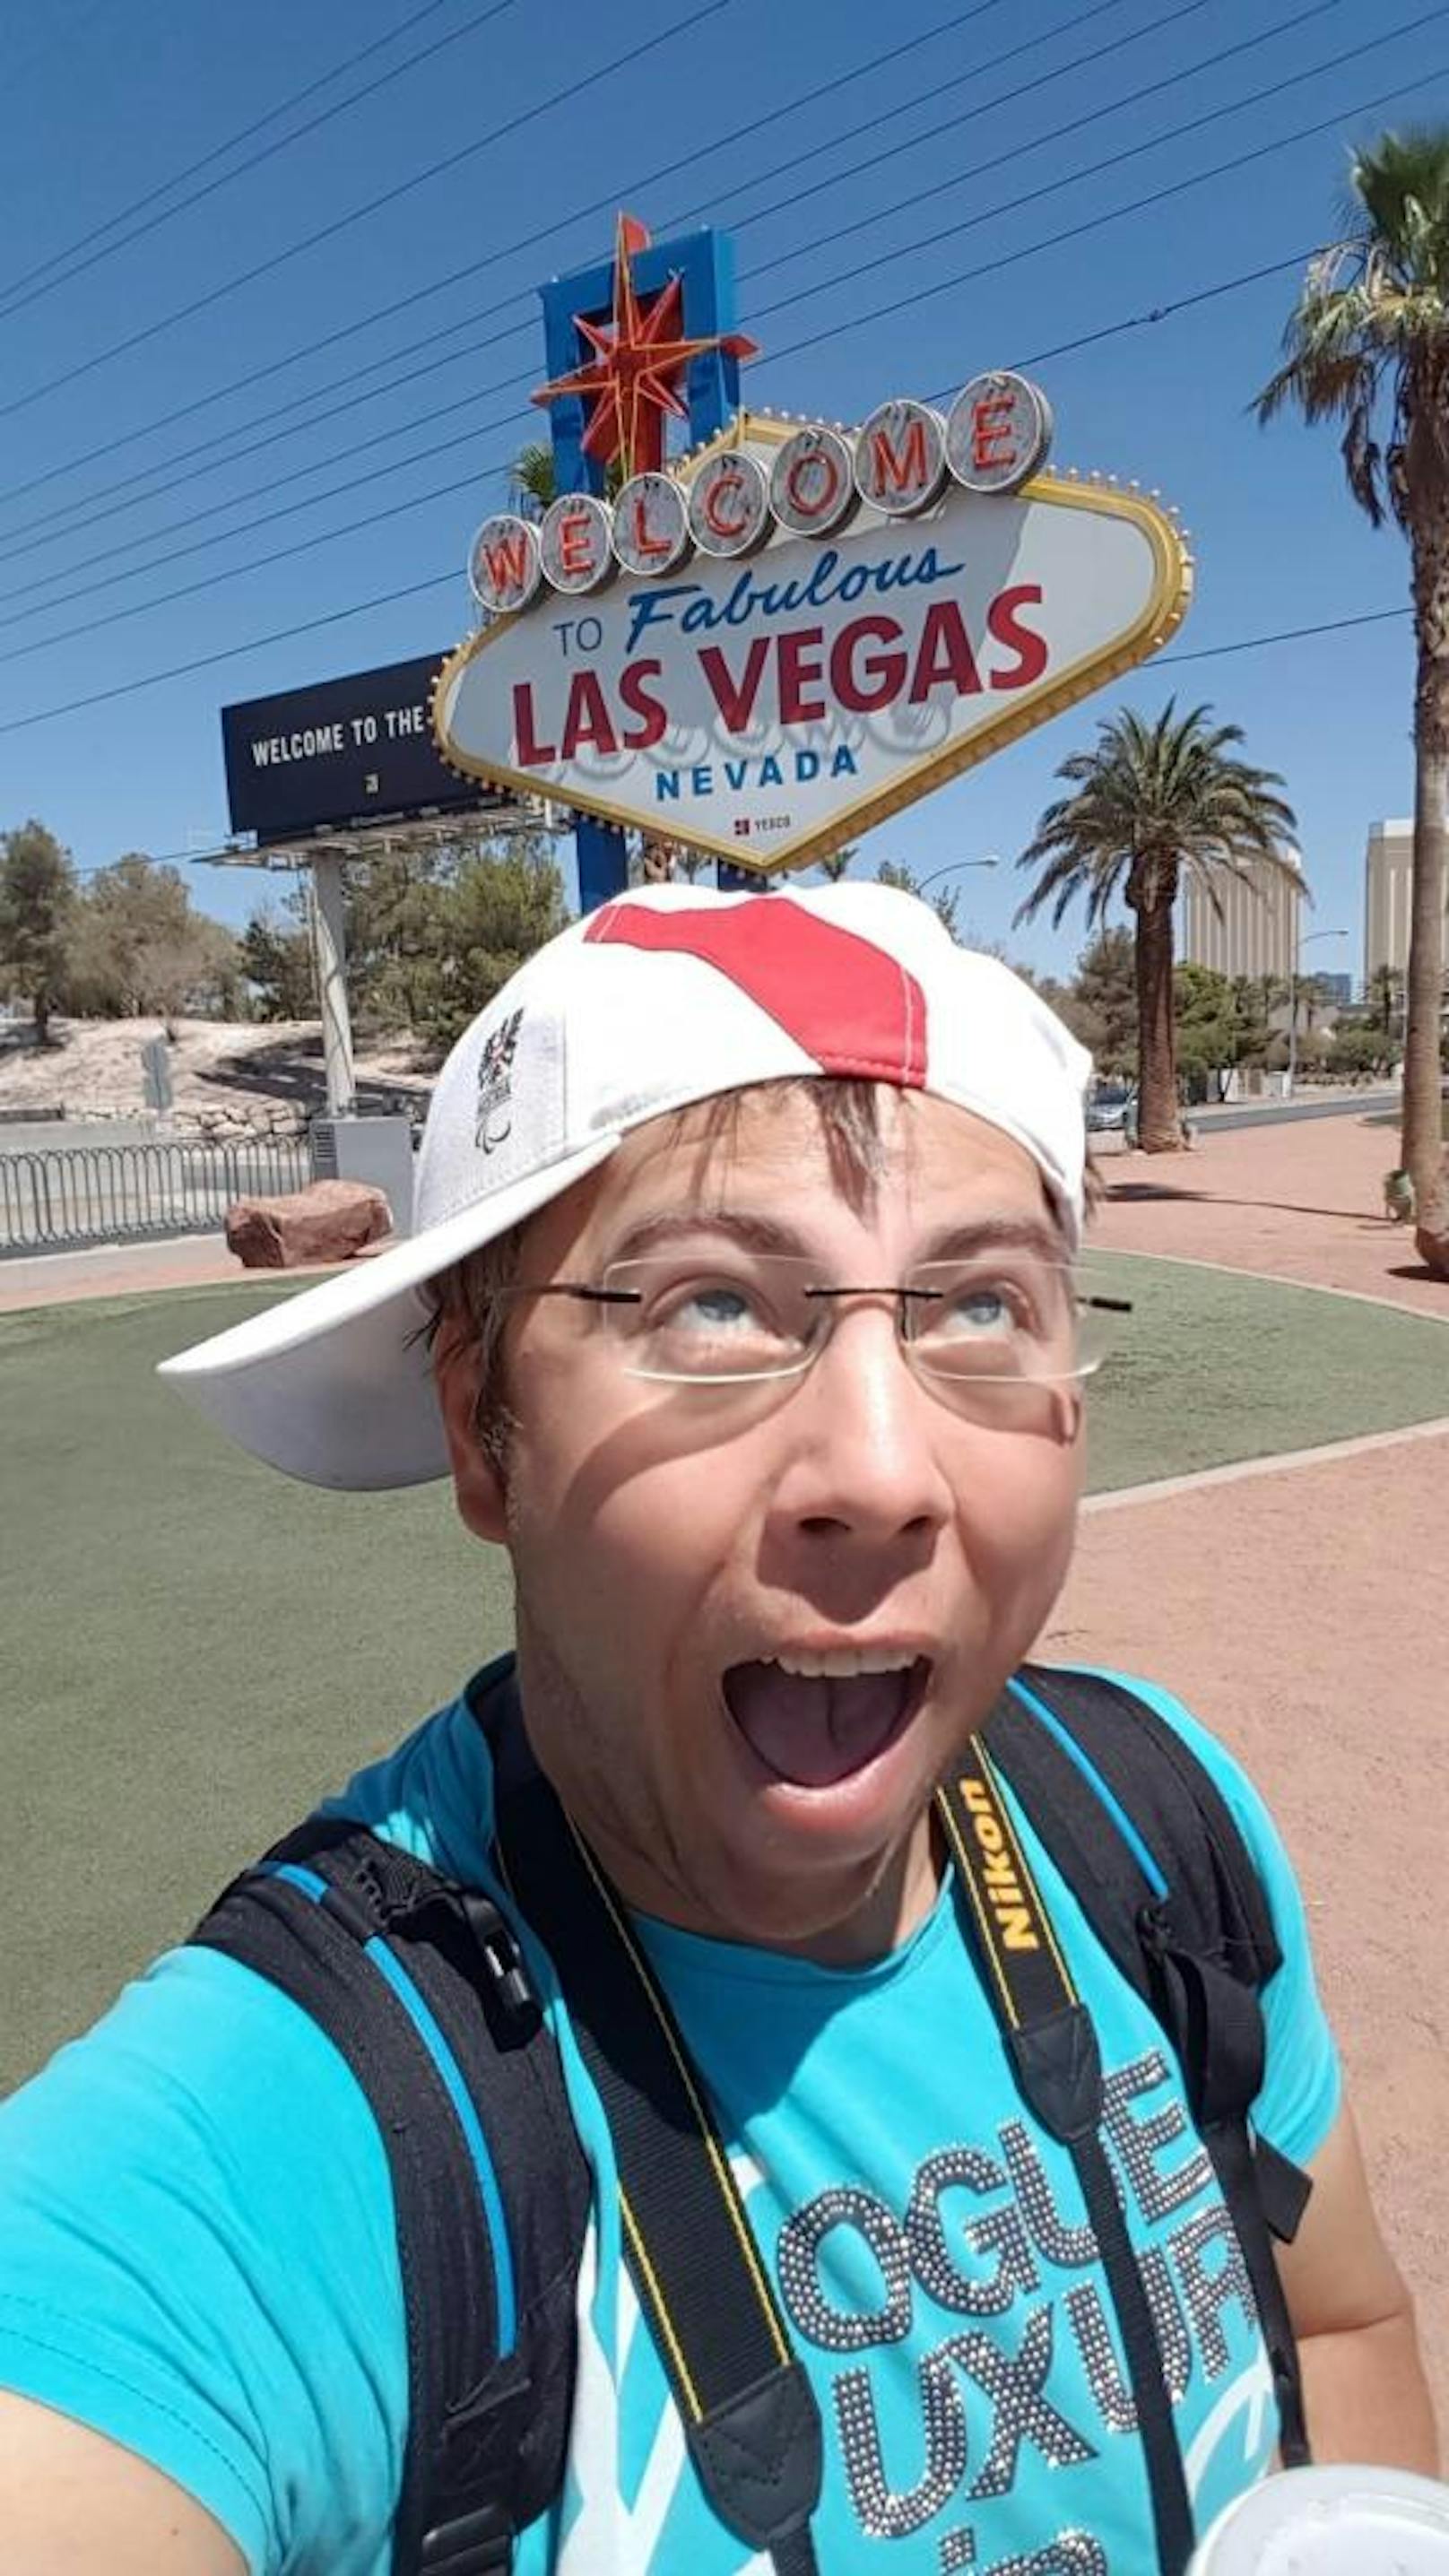 Mein Tag des Selfies feier ich in Las Vegas.
Eine glitzernde Stadt mit vielen tollen Attraktionen. Einen oder sogar mehrere Besuch Wert.